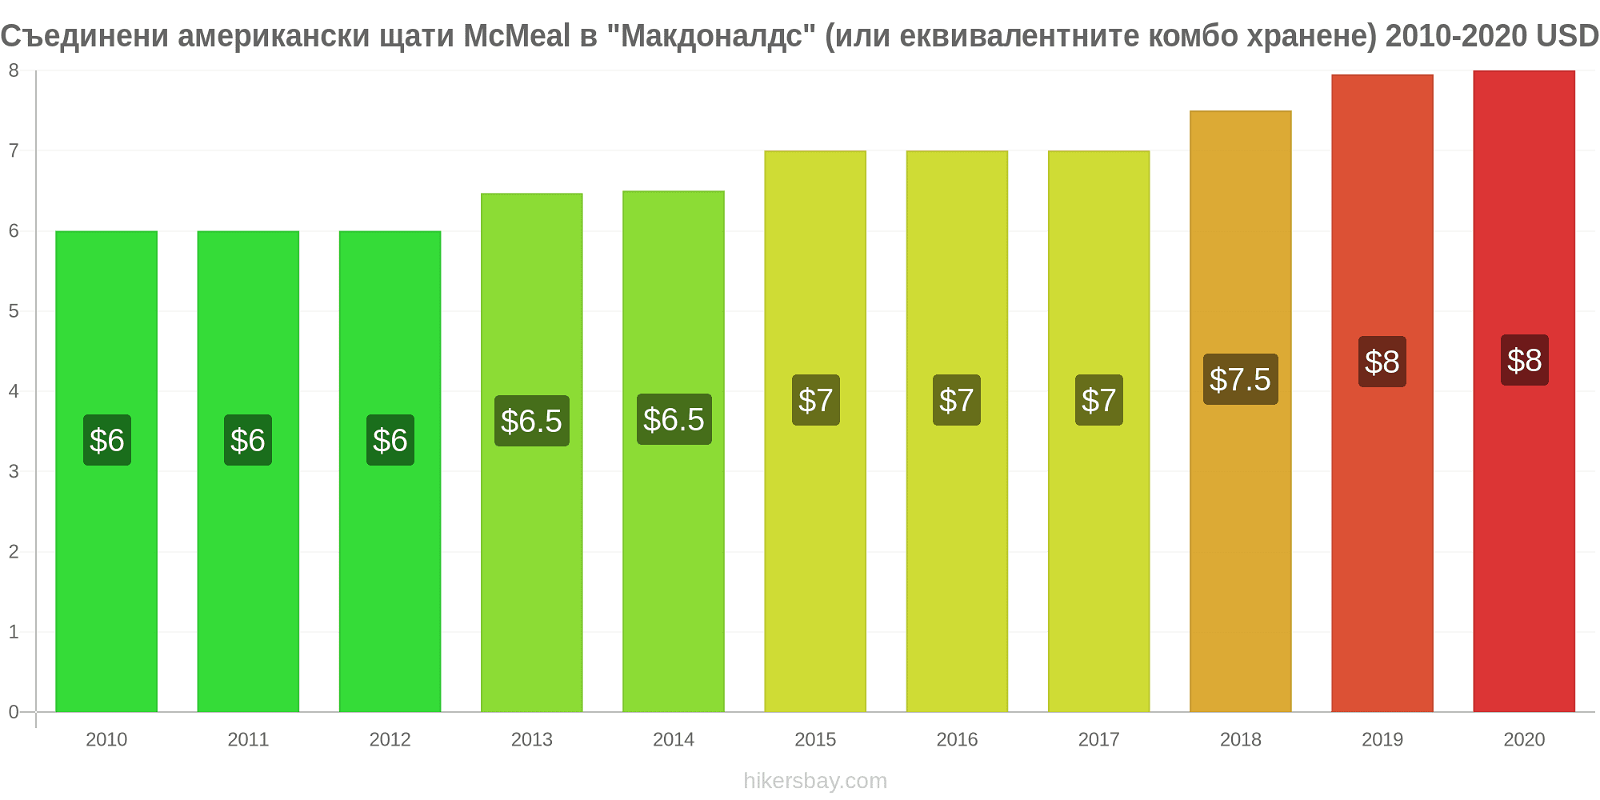 Съединени американски щати ценови промени McMeal в "Макдоналдс" (или еквивалентните комбо хранене) hikersbay.com